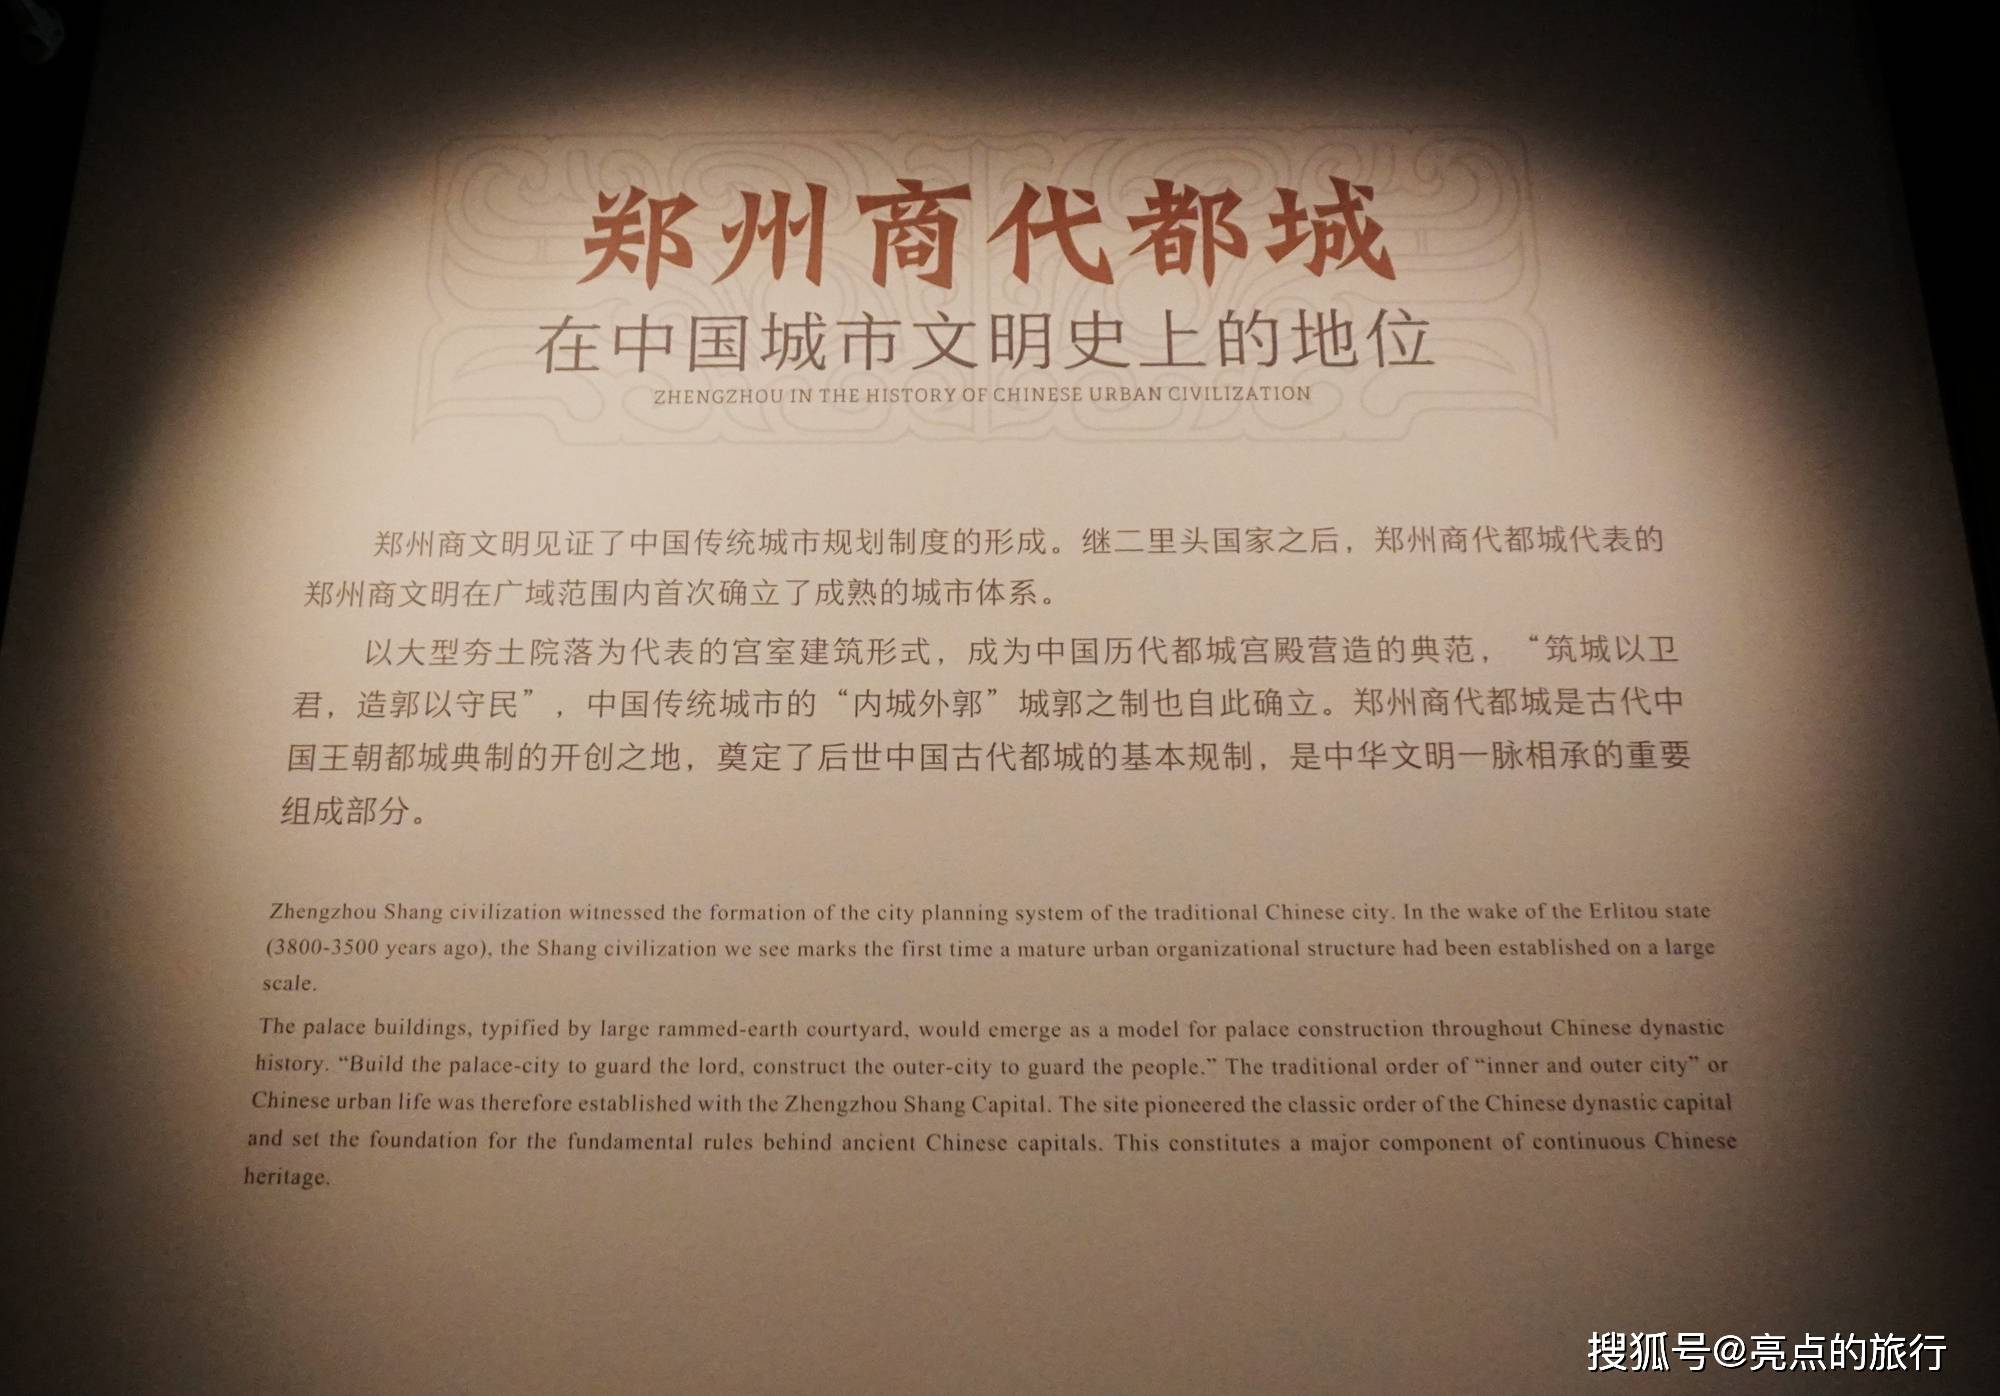 郑州商都都城遗址博物院:揭开3600余年前商代早期都城神